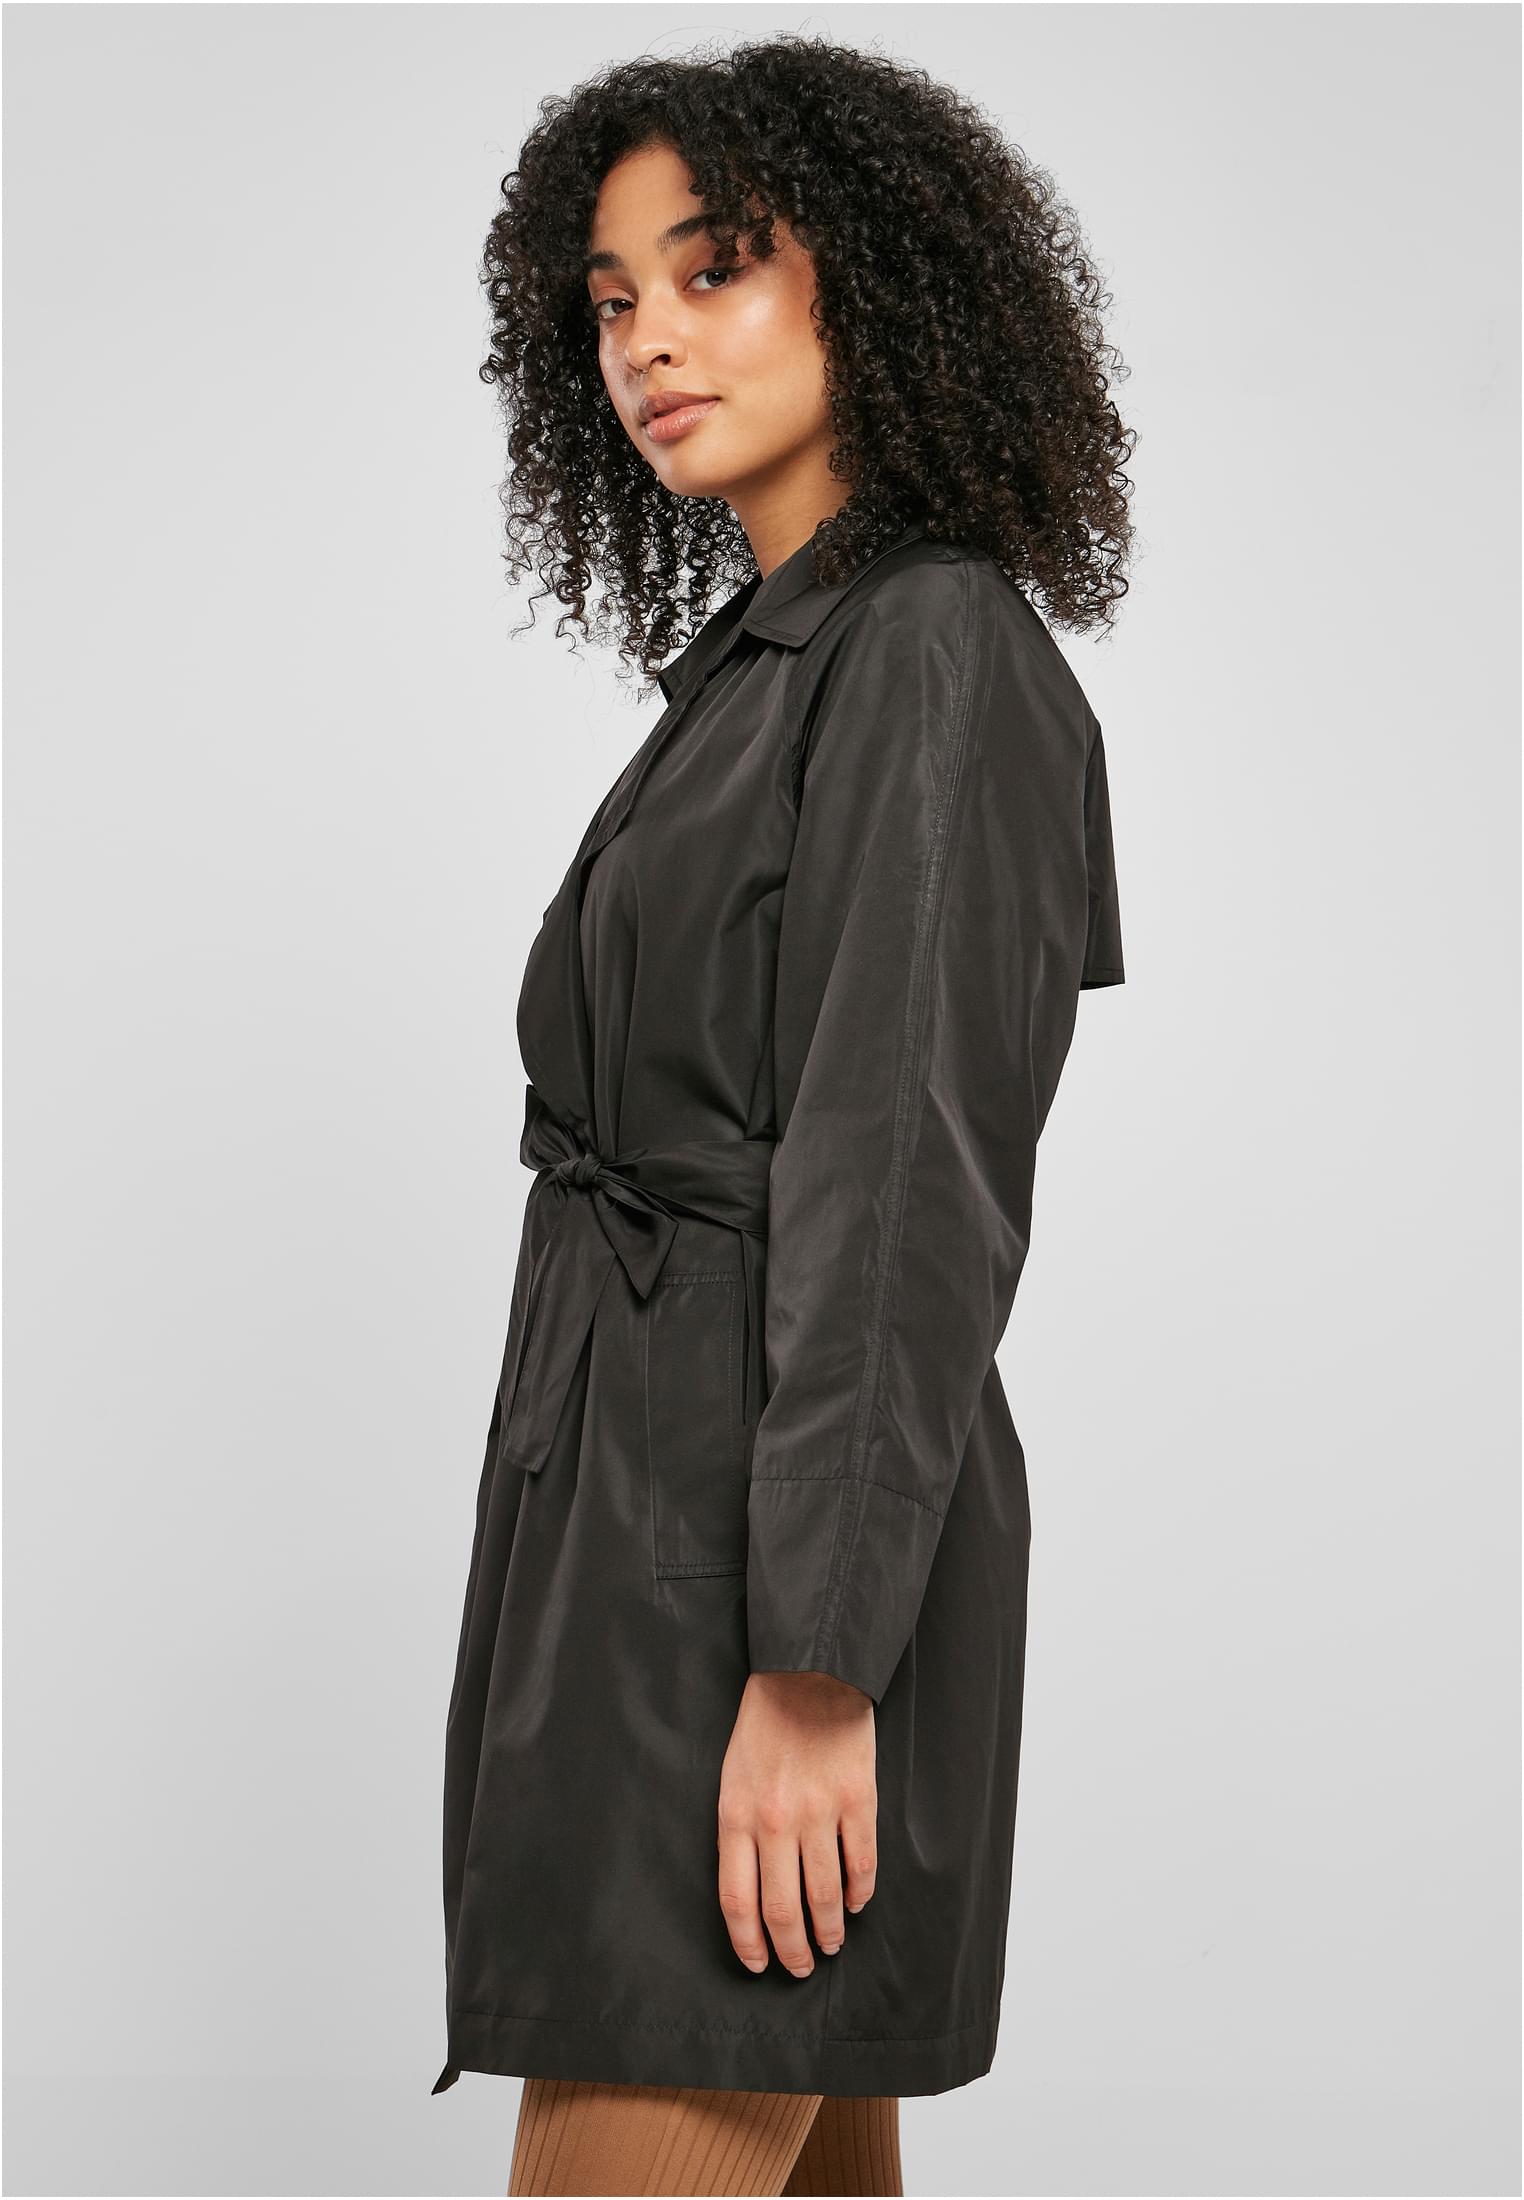 Frauen Ladies Crinkle Nylon Minimal Trench Coat in Farbe black